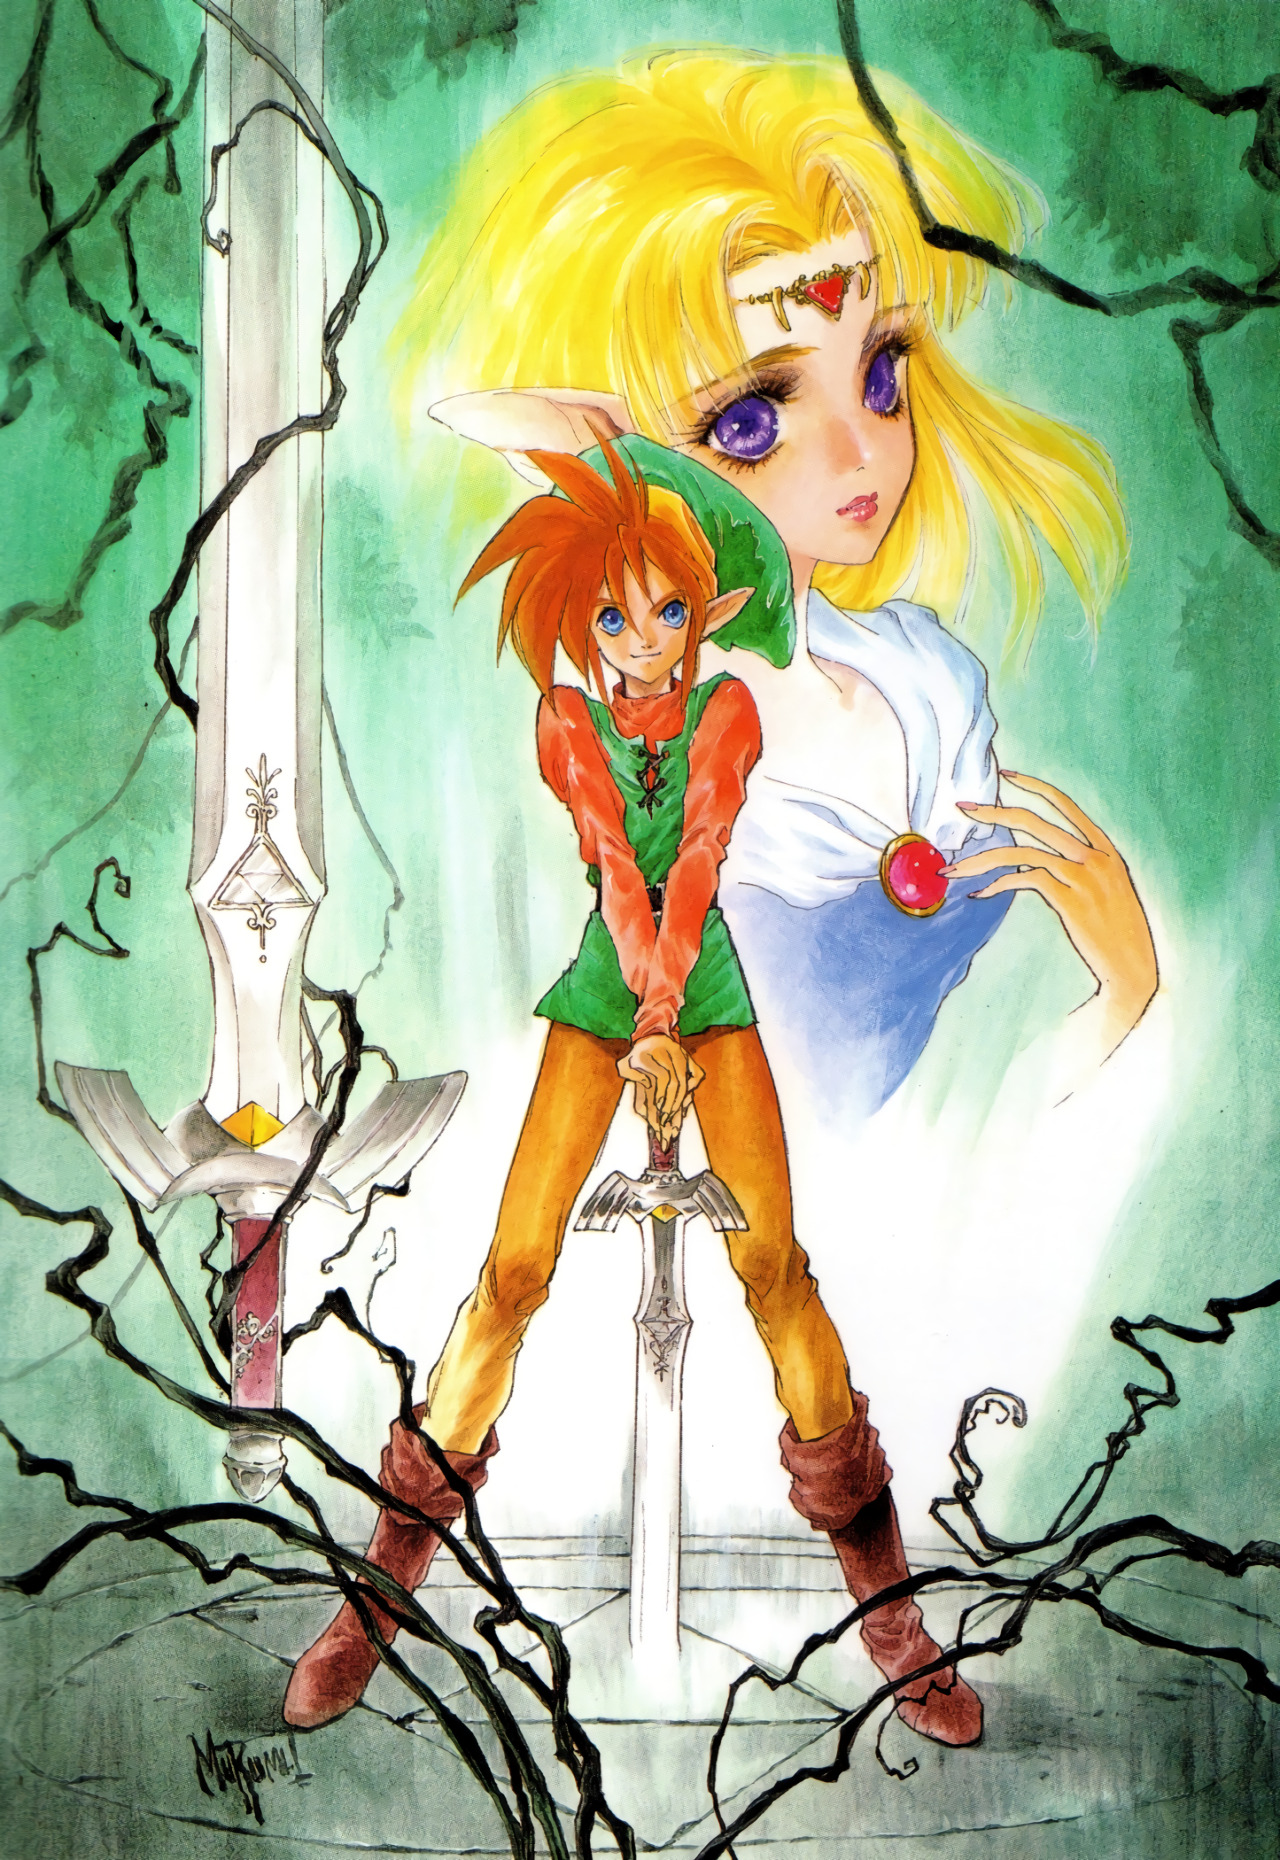 animarchive:  The Legend of Zelda by Mutsumi Inomata. (Mutsumi Inomata Illustrations